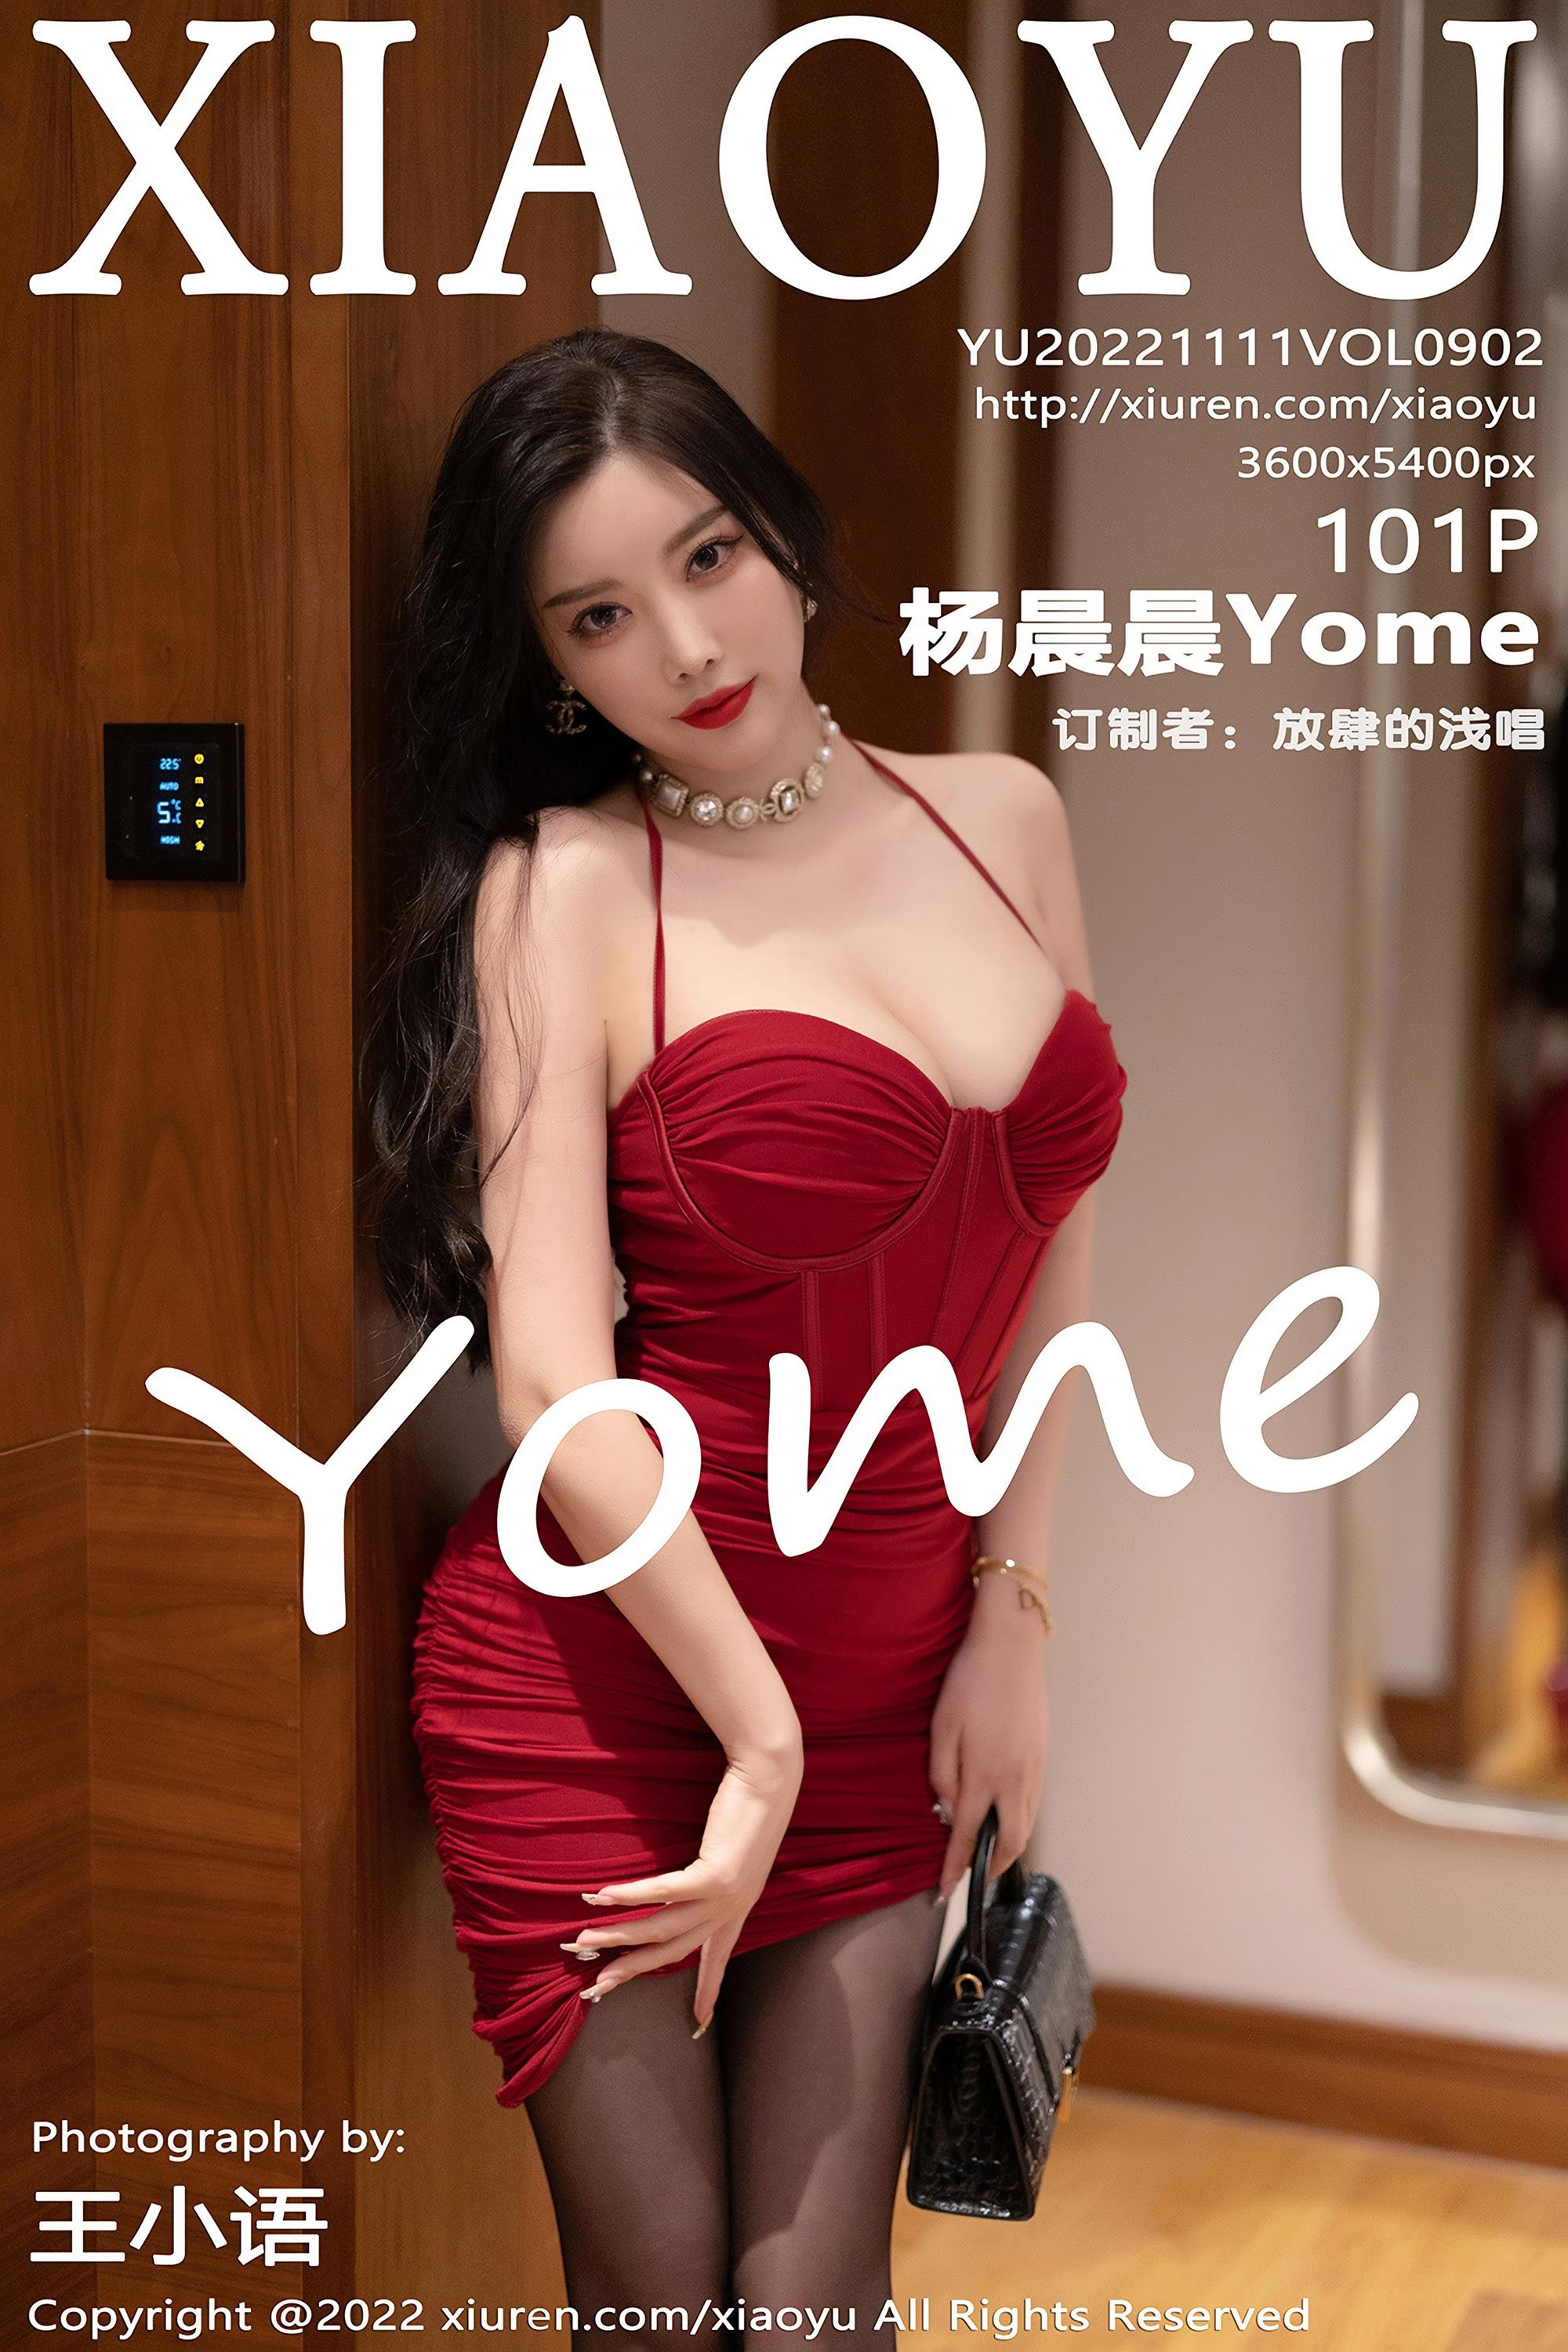 XIAOYU 语画界 2022.11.11 Vol.902 杨晨晨Yome - 102.jpg